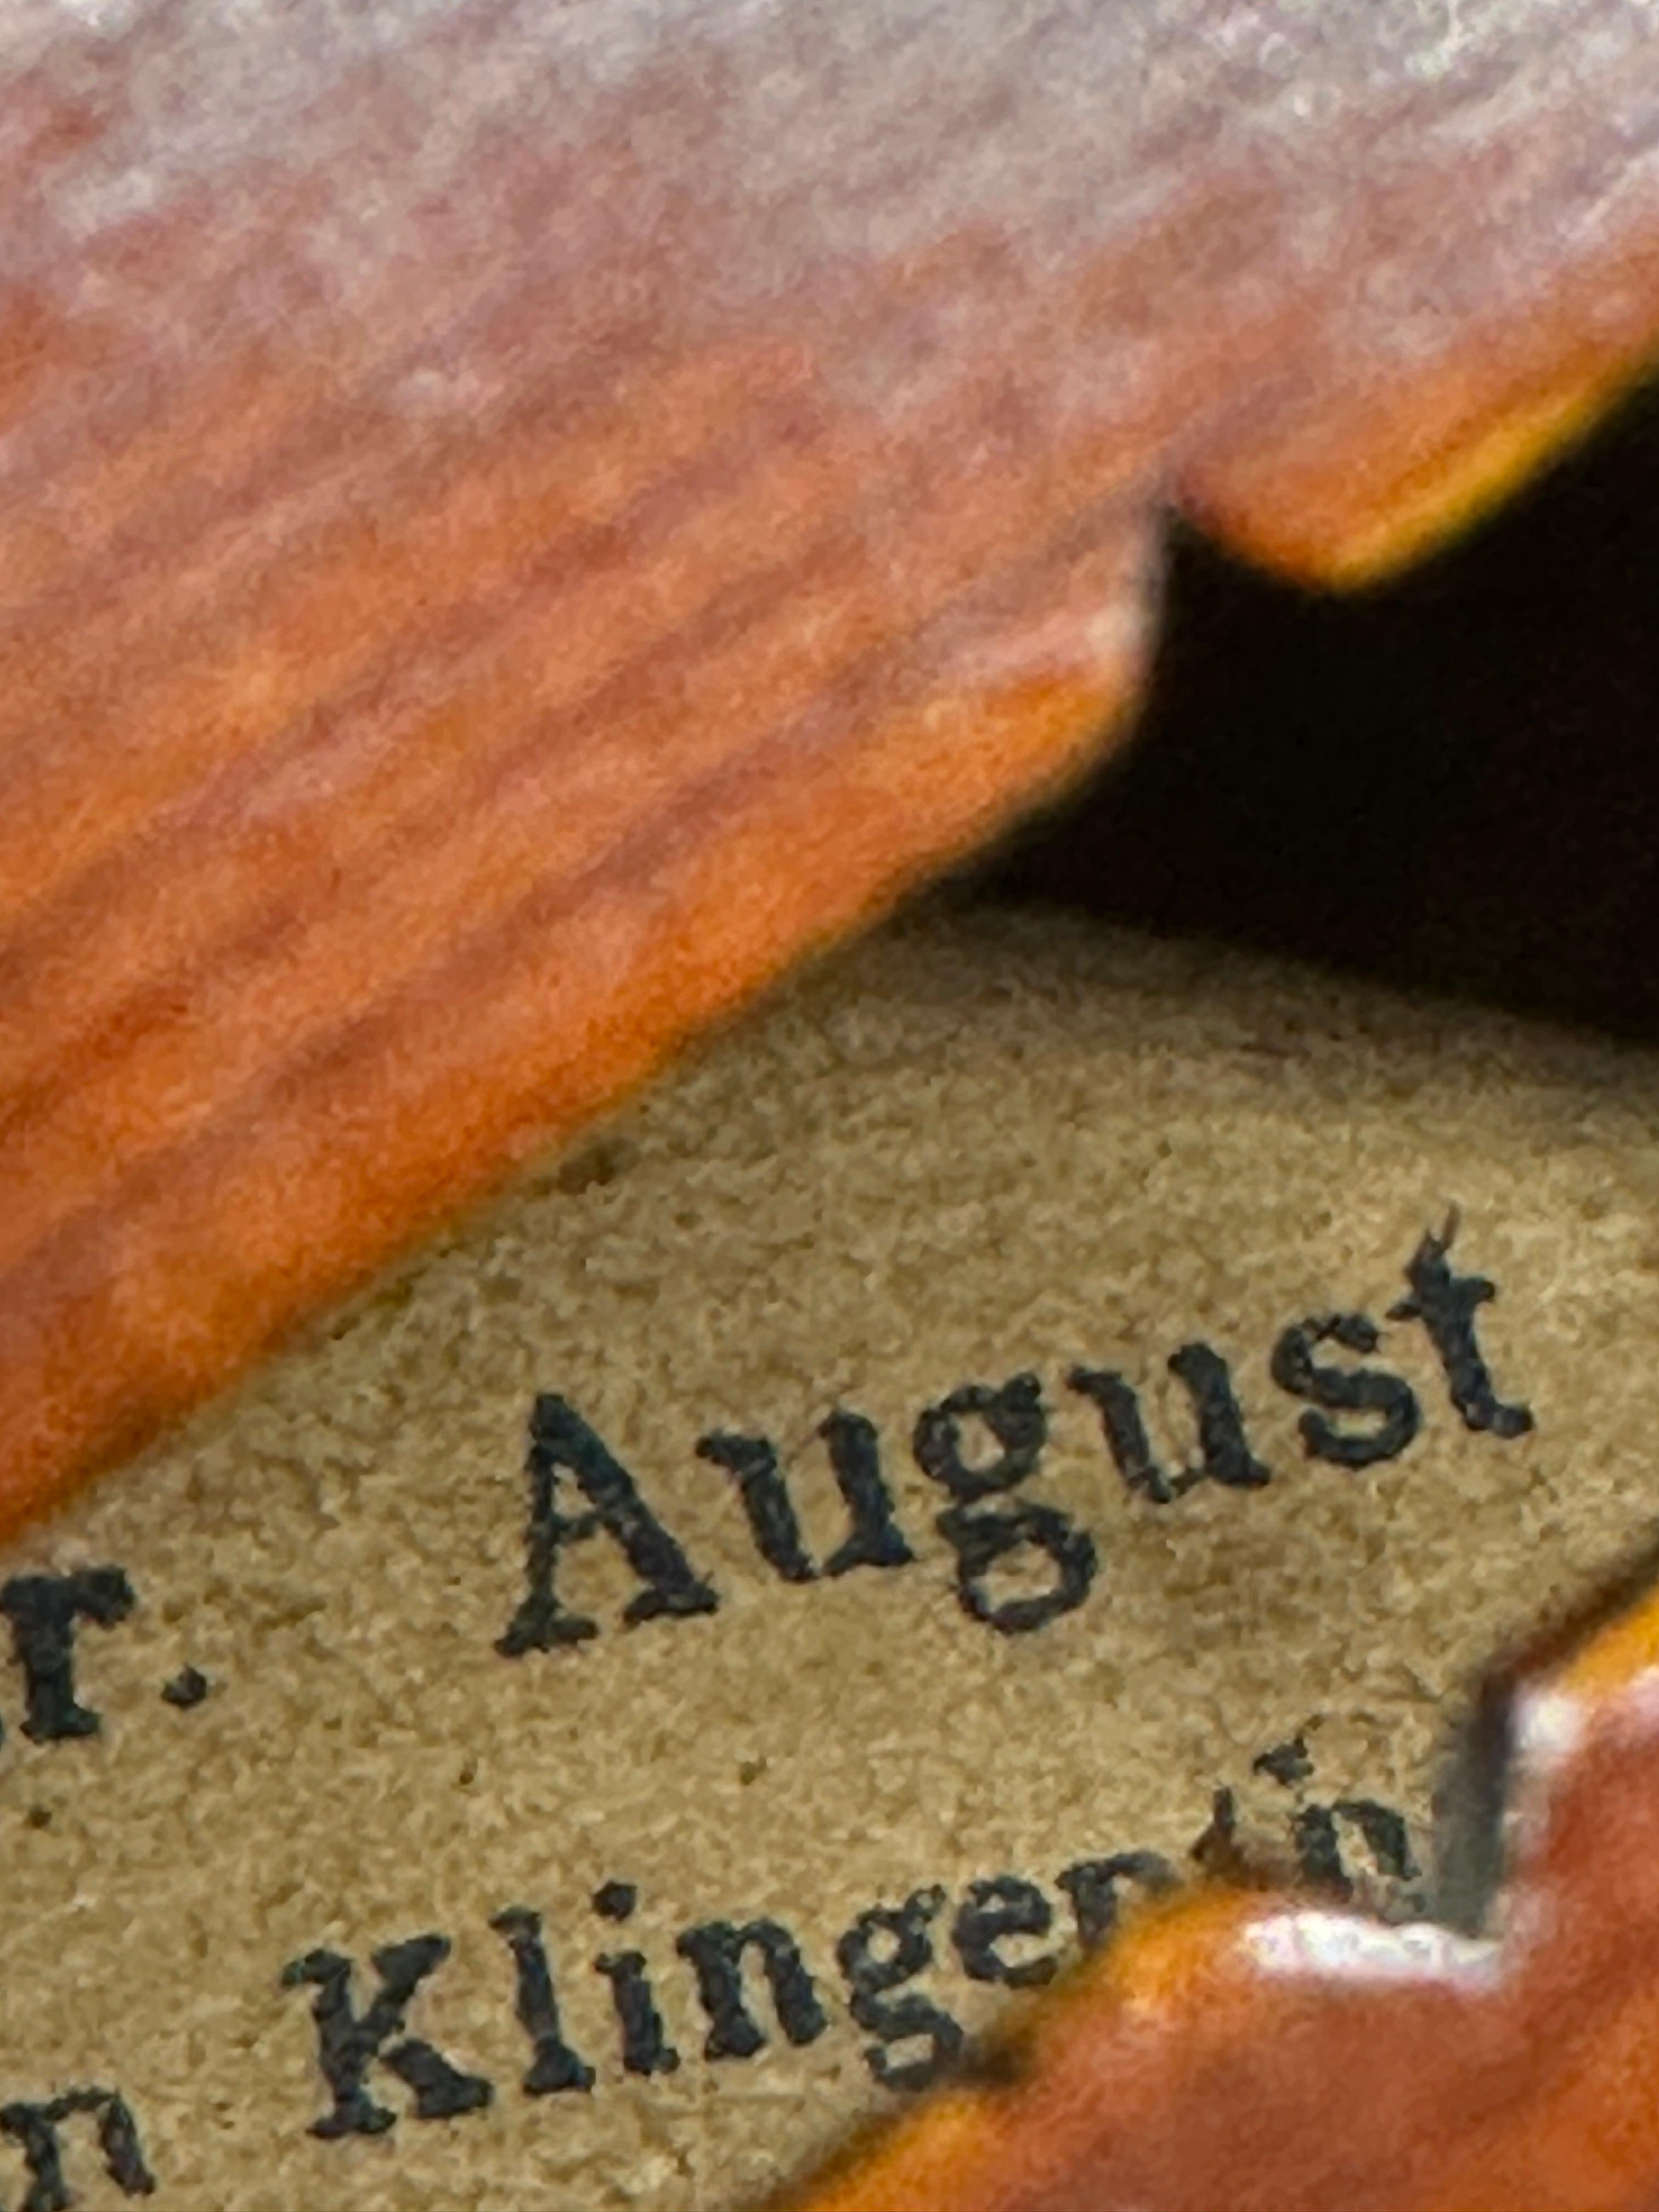 August Meinel Violin